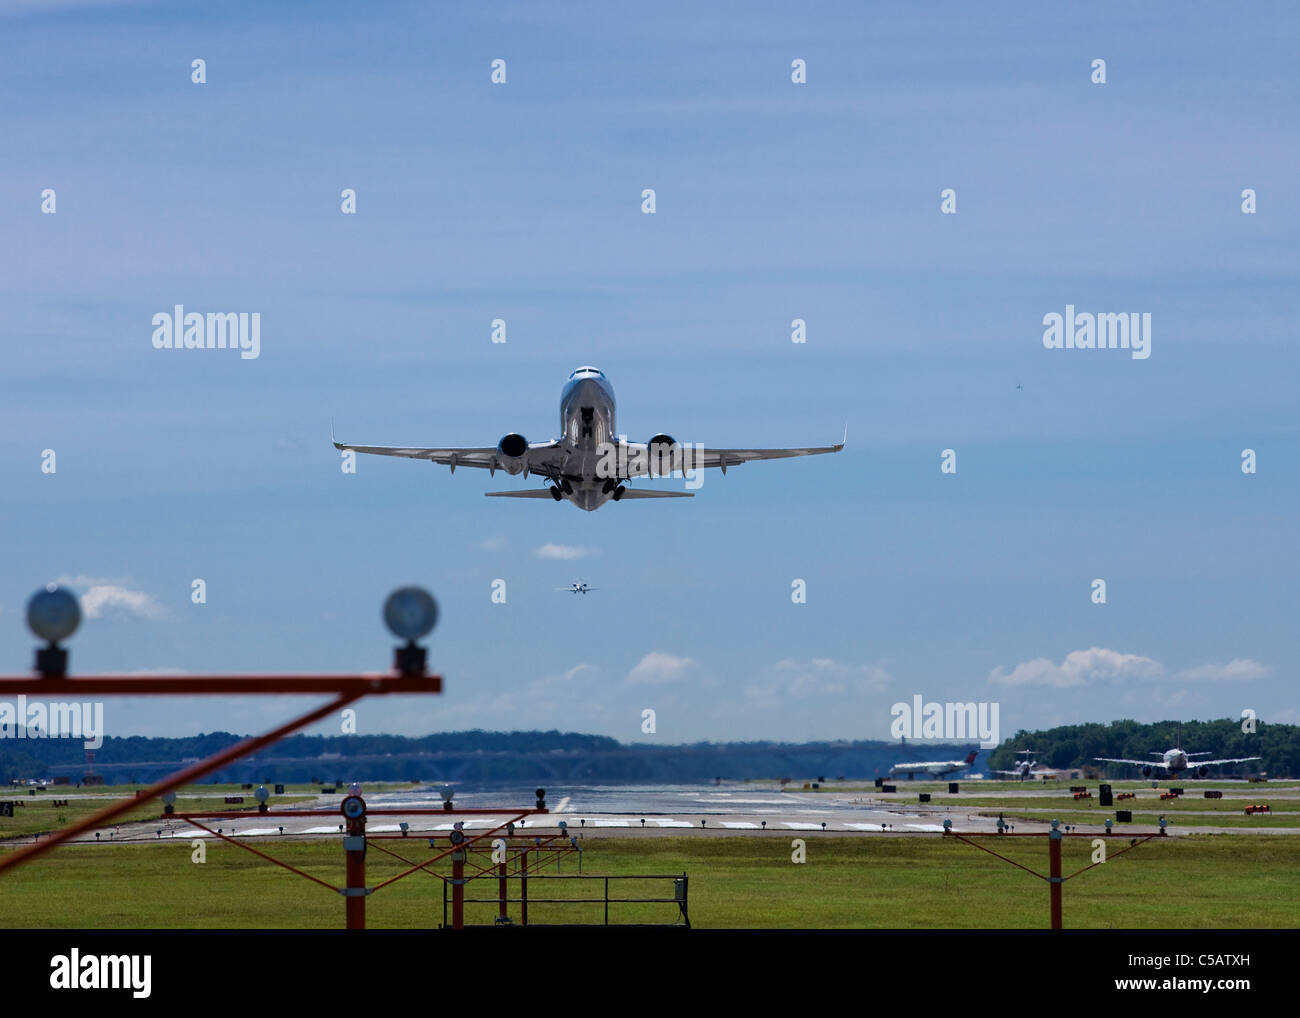 Ein Pendler-Jet zieht über PAPI Lichter am Ende der Start-und Landebahn  Stockfotografie - Alamy